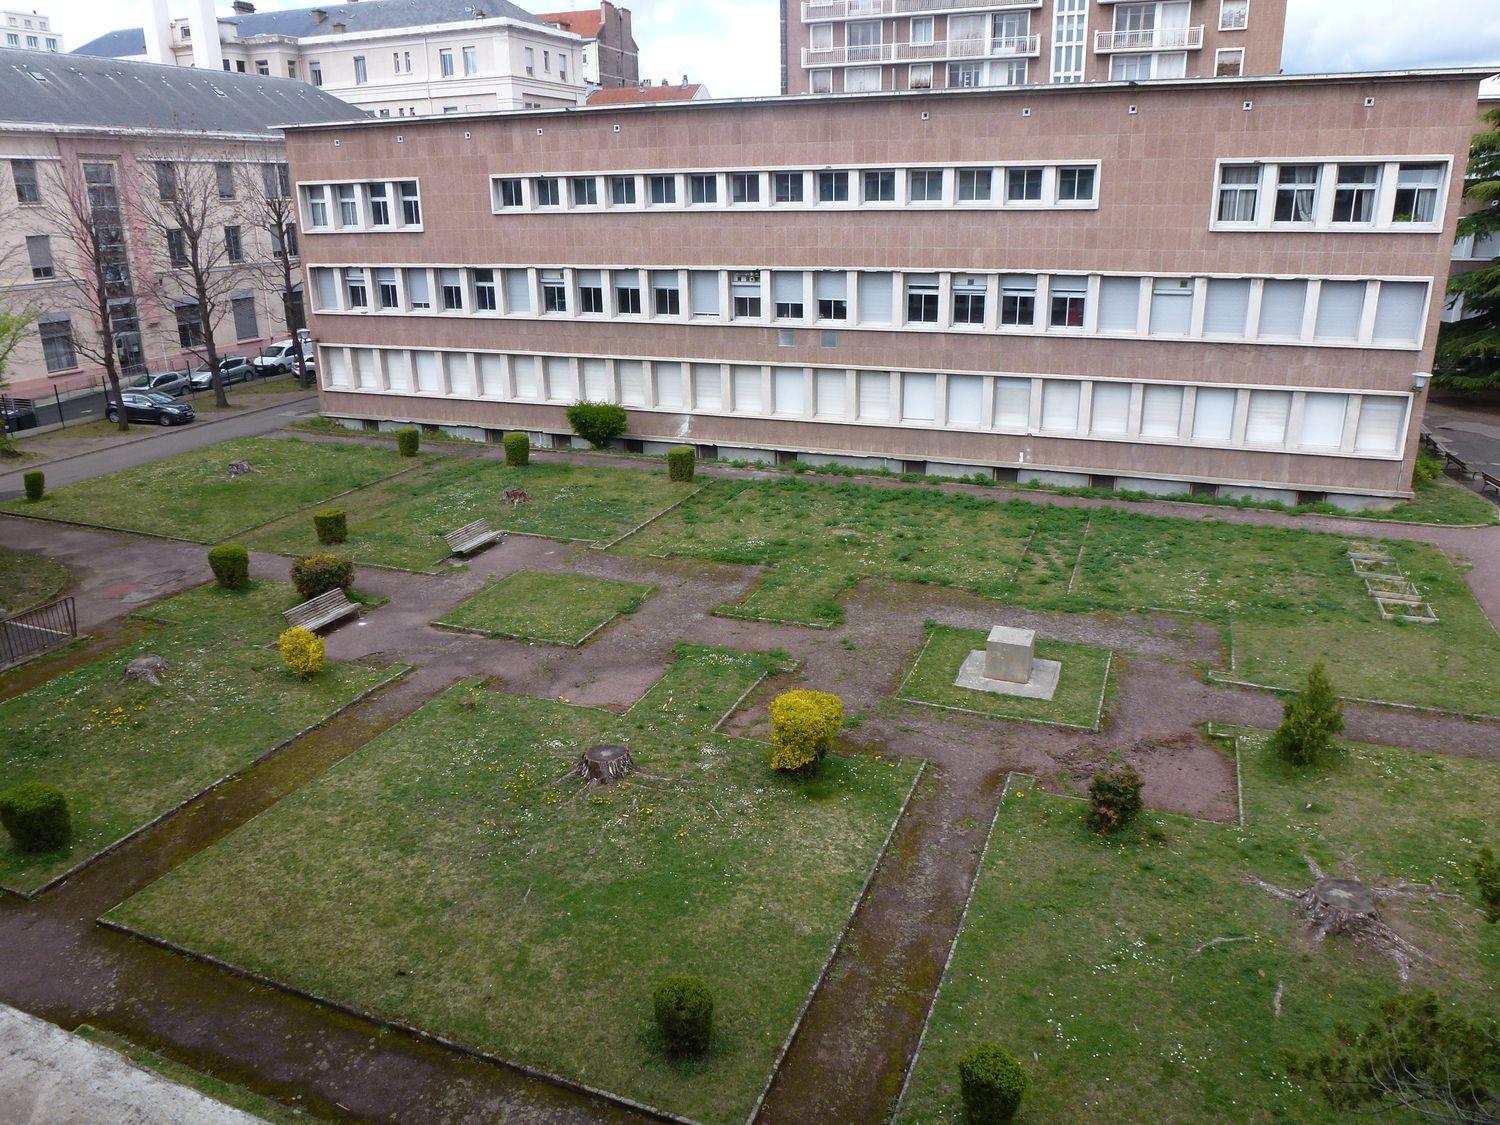 Lycée Blaise-Pascal, actuellement cité scolaire Blaise-Pascal de Clermont-Ferrand